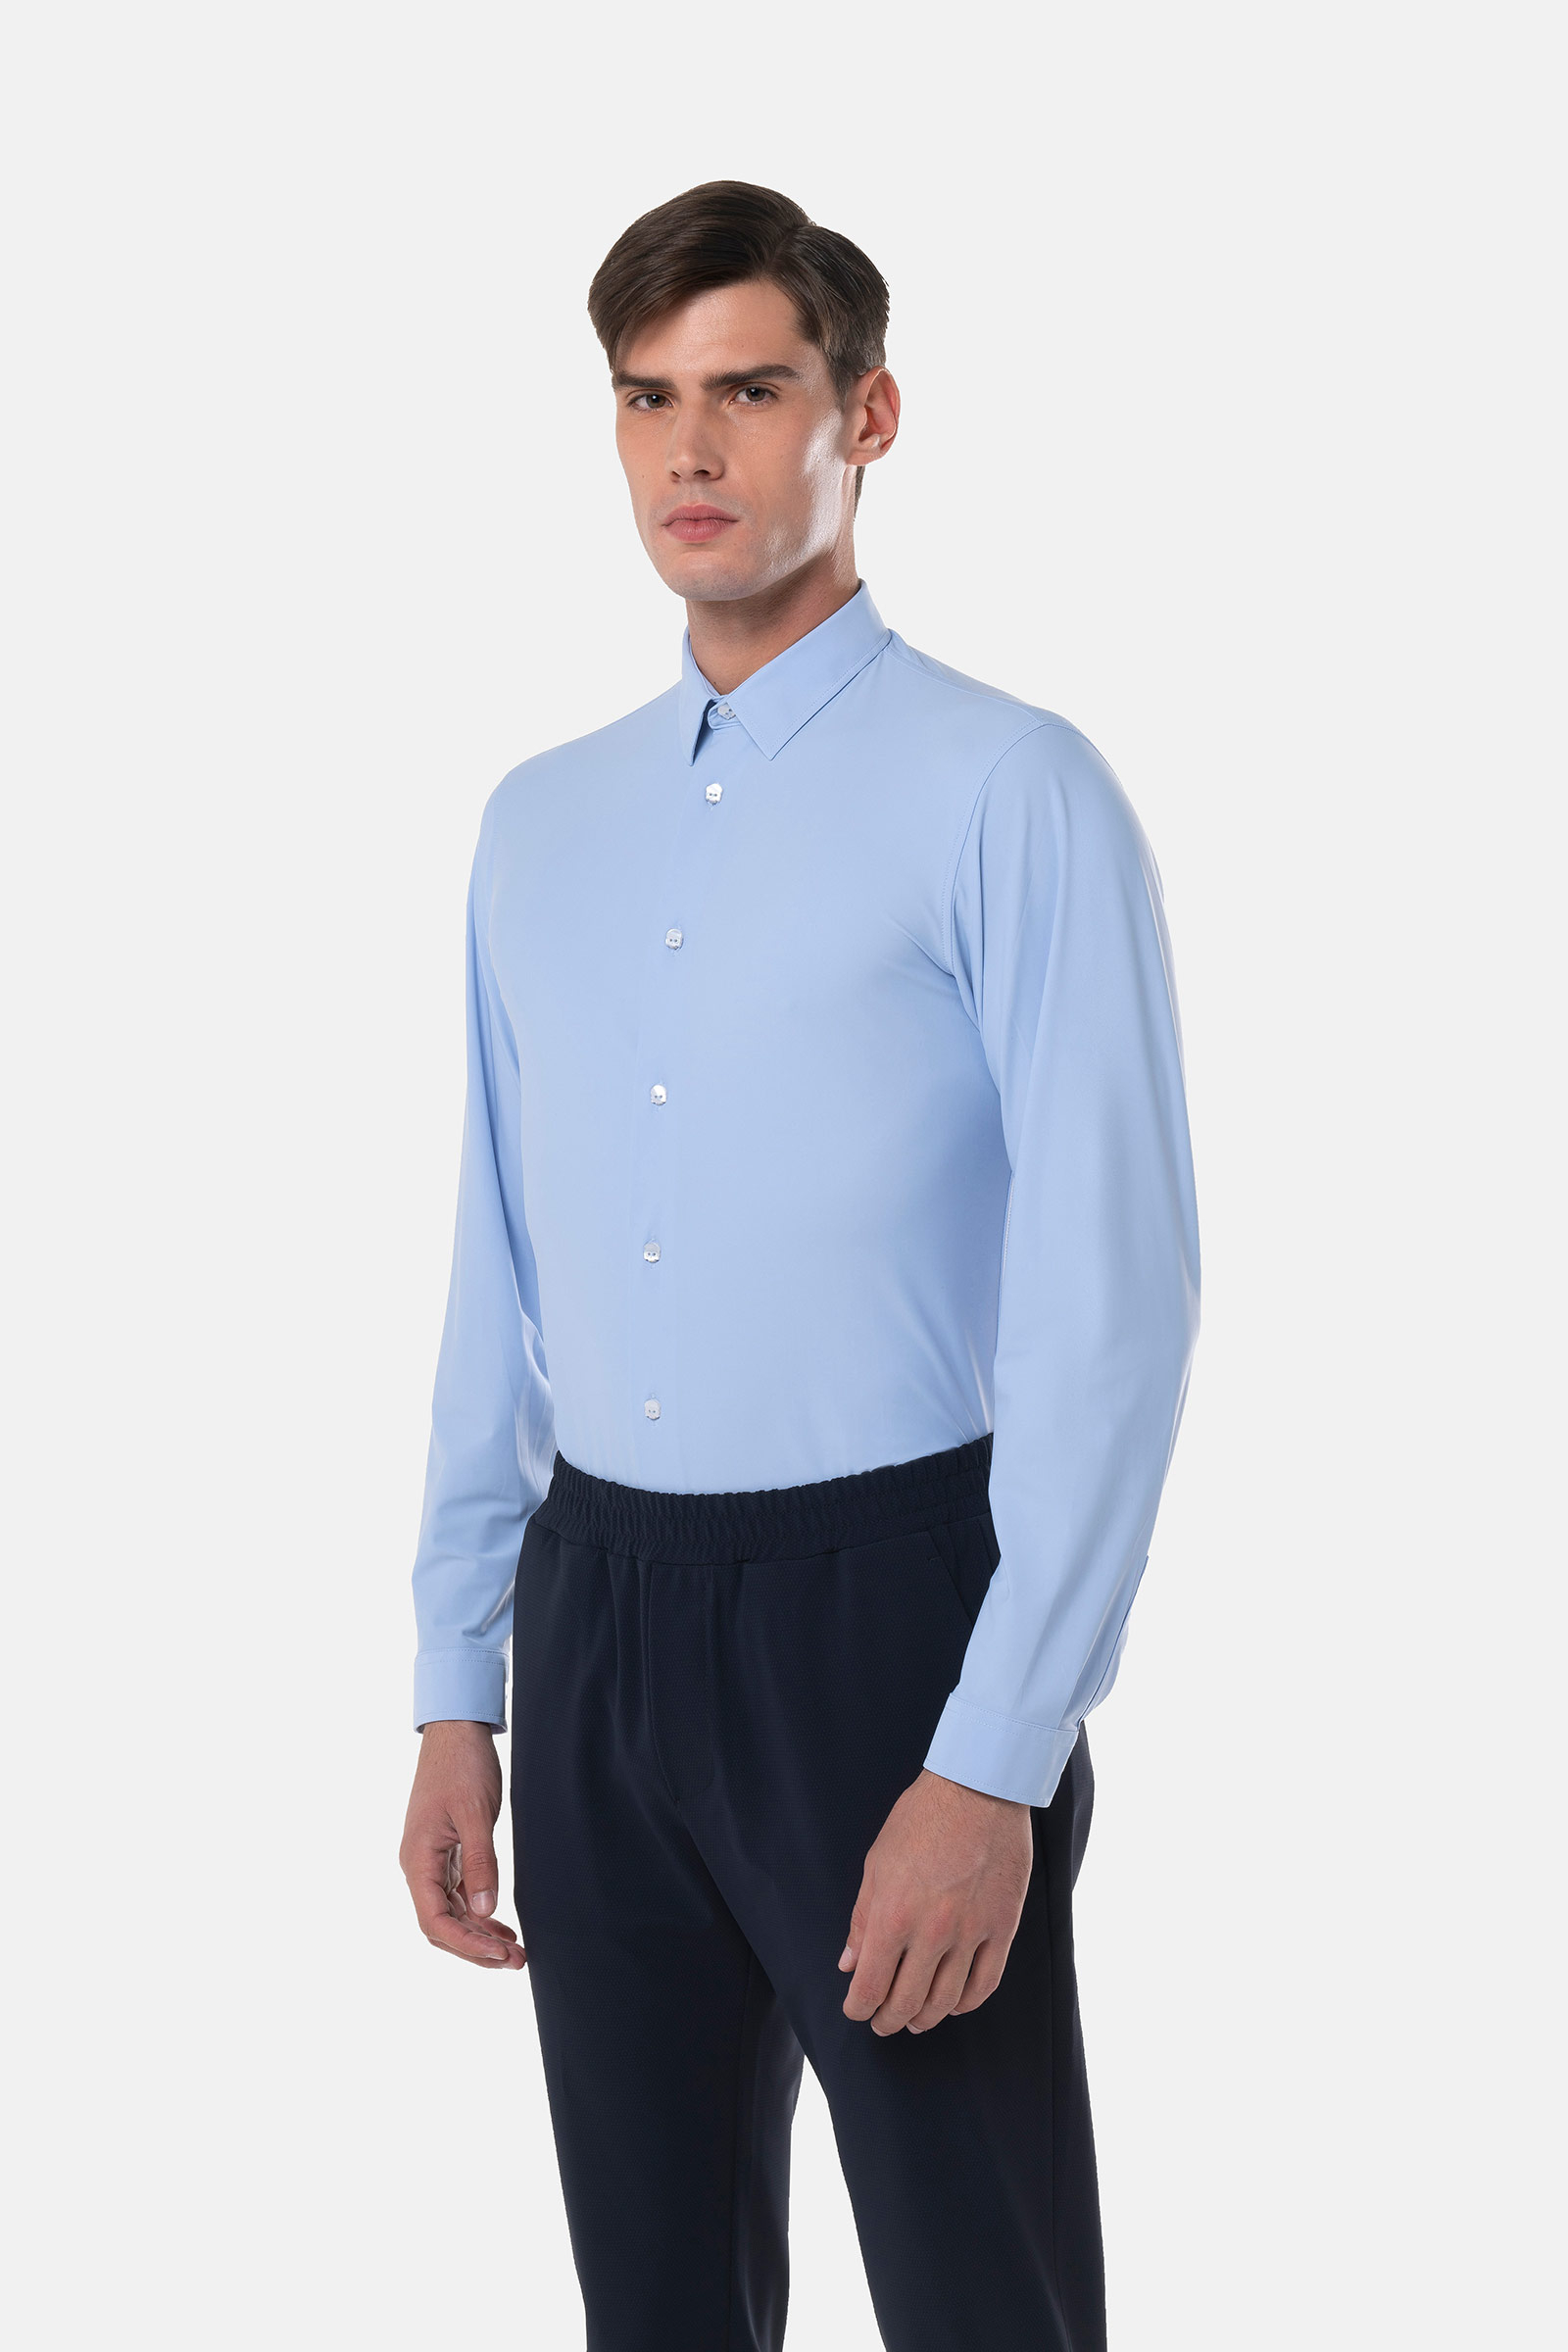 TECH SHIRT - BLUE - Hydrogen - Luxury Sportwear